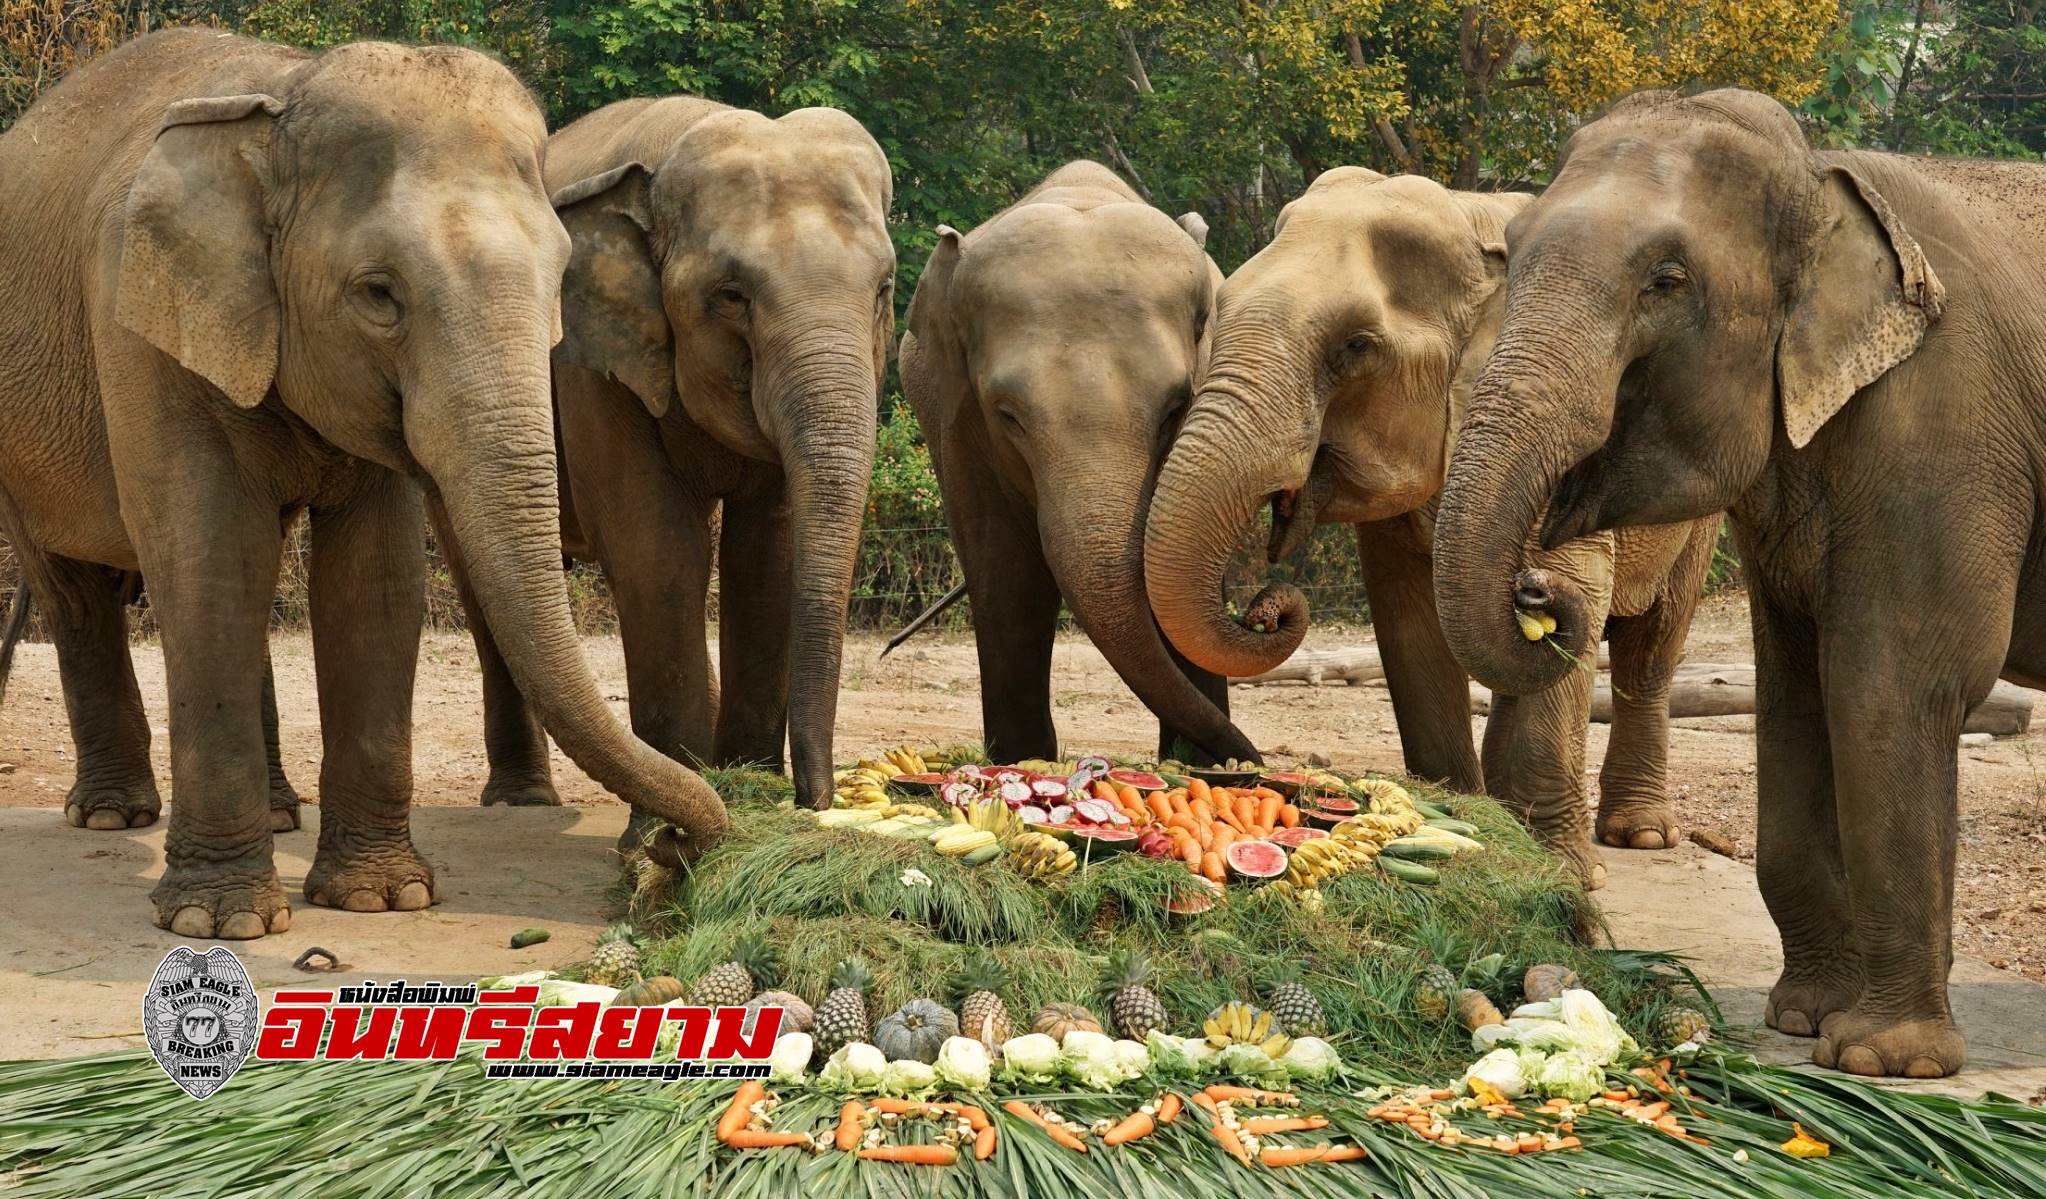 เชียงใหม่-ไนท์ซาฟารี จัดบุฟเฟ่ต์ผักและผลไม้รวม มอบความสุขให้ช้าง